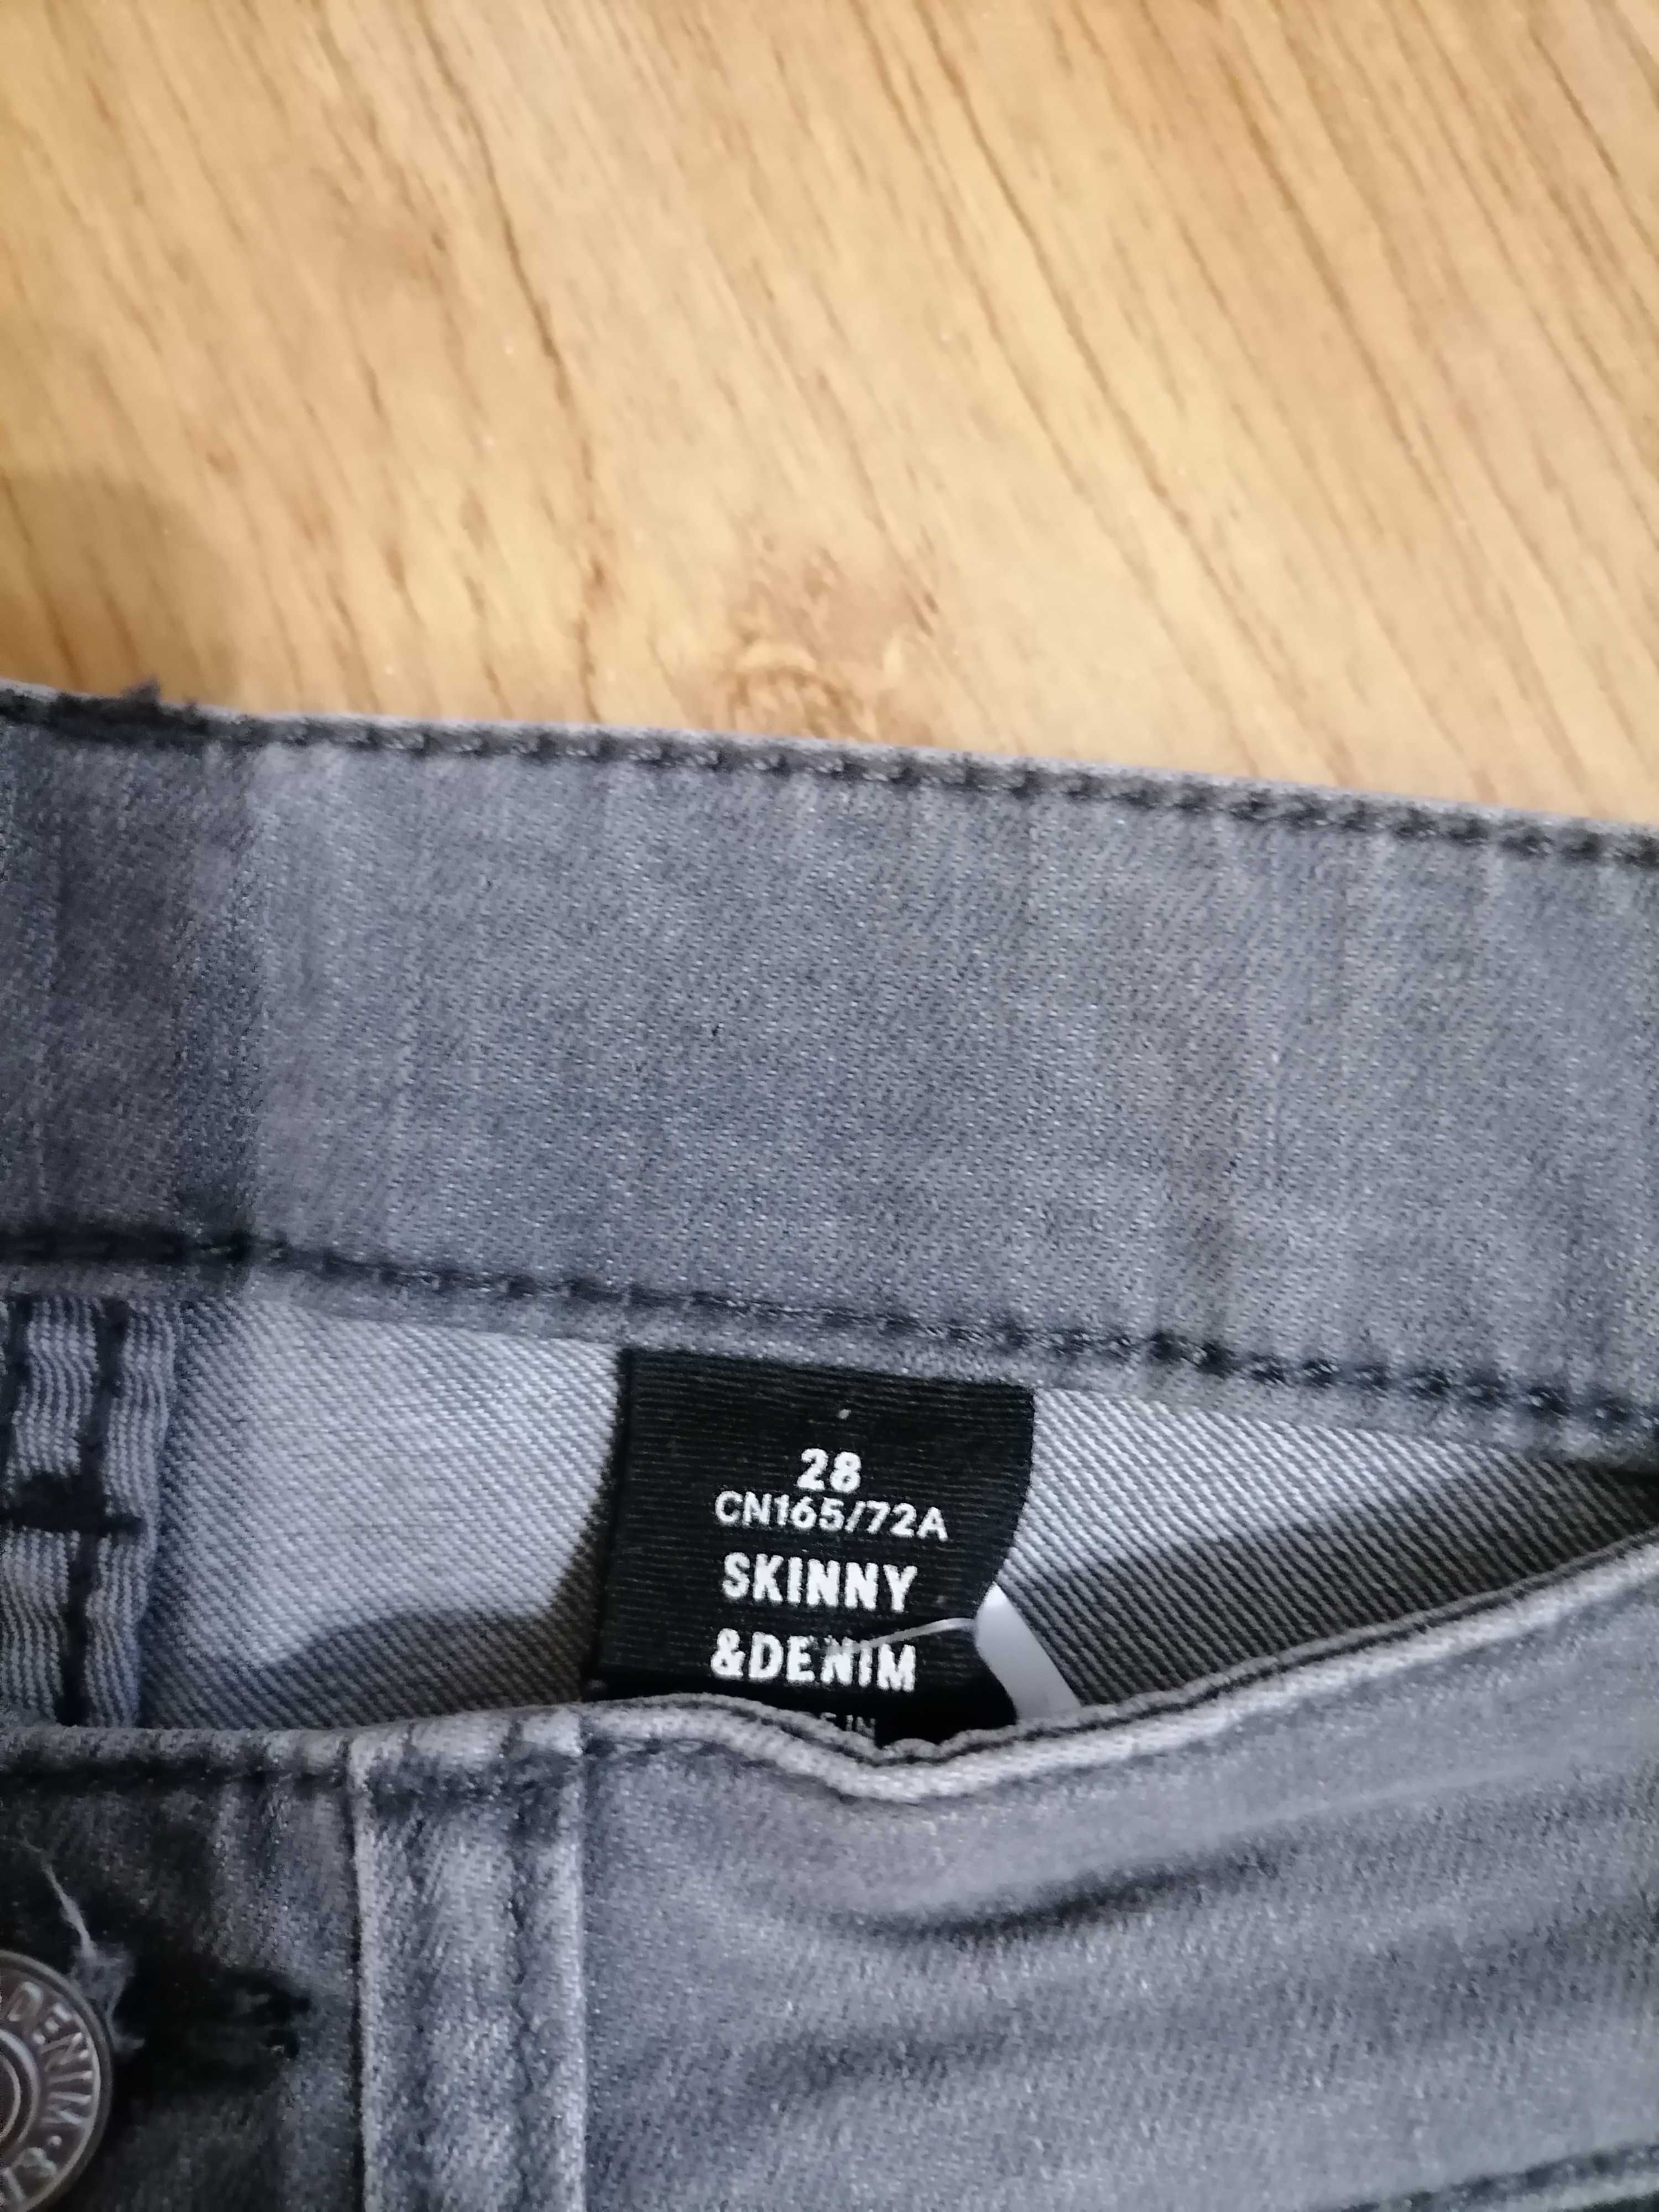 Spodnie szare chłopięce H&M rozmiar 28